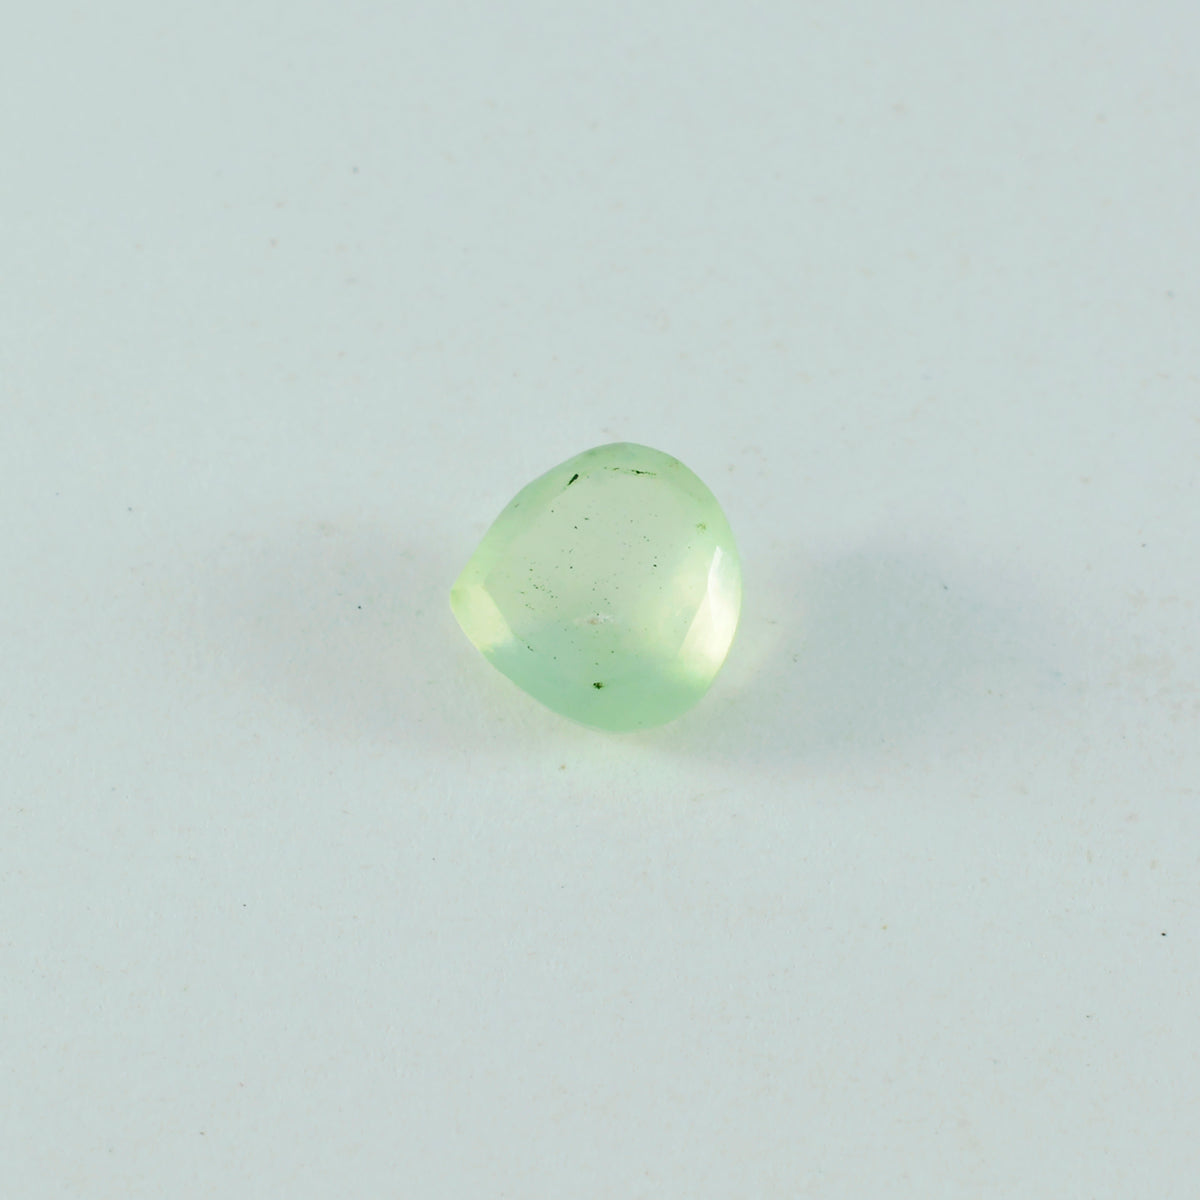 riyogems 1pc グリーン プレナイト ファセット 9x9 mm ハート形のかわいい品質の宝石